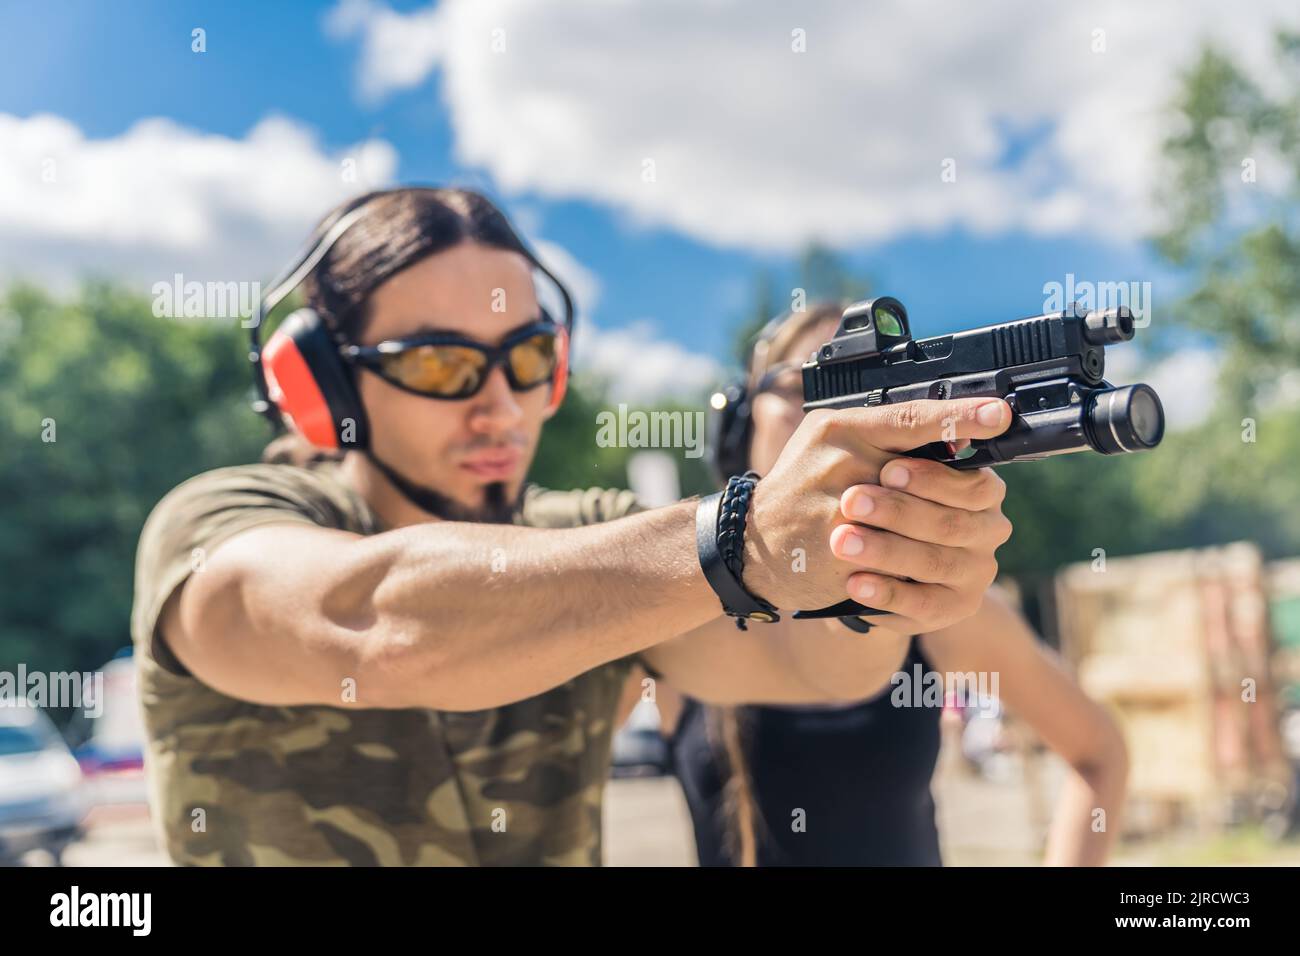 Kaukasischer bärtiger Mann in Sicherheitsausrüstung und Tarnkleidung mit Zielhandwaffe. Schusswaffentraining auf dem Schießstand im Freien. Horizontale Aufnahme. Hochwertige Fotos Stockfoto